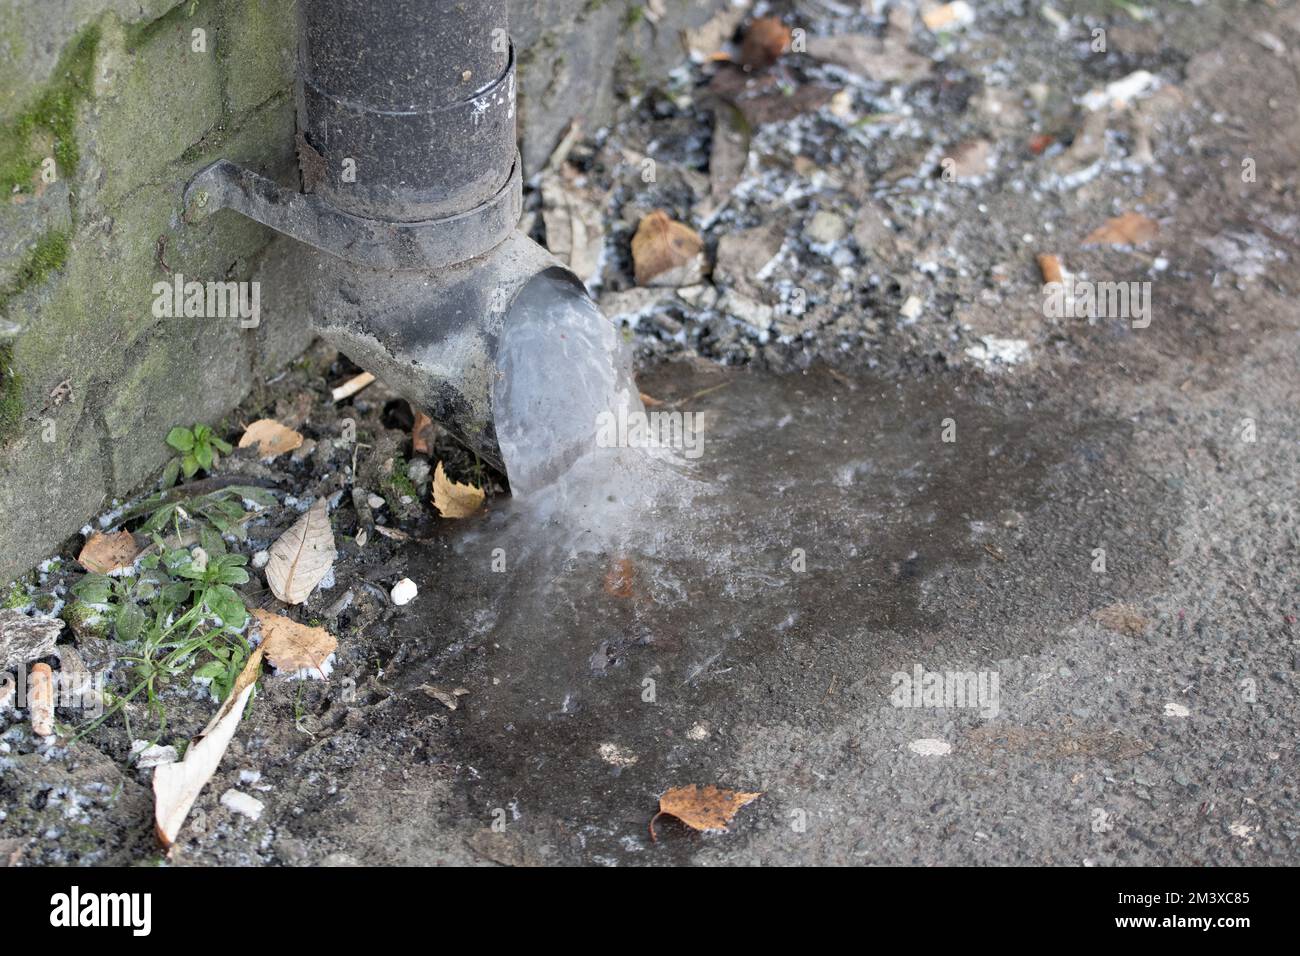 Eau gelée dans le tuyau de descente de la gouttière. La fermeture à froid au Royaume-Uni voit les tuyaux geler, ce qui entraîne des problèmes lorsque le temps chauffe et éclate les tuyaux. Manchester UK photo : GARYROBERTS/WORLDWIDEFEATURES.COM Banque D'Images